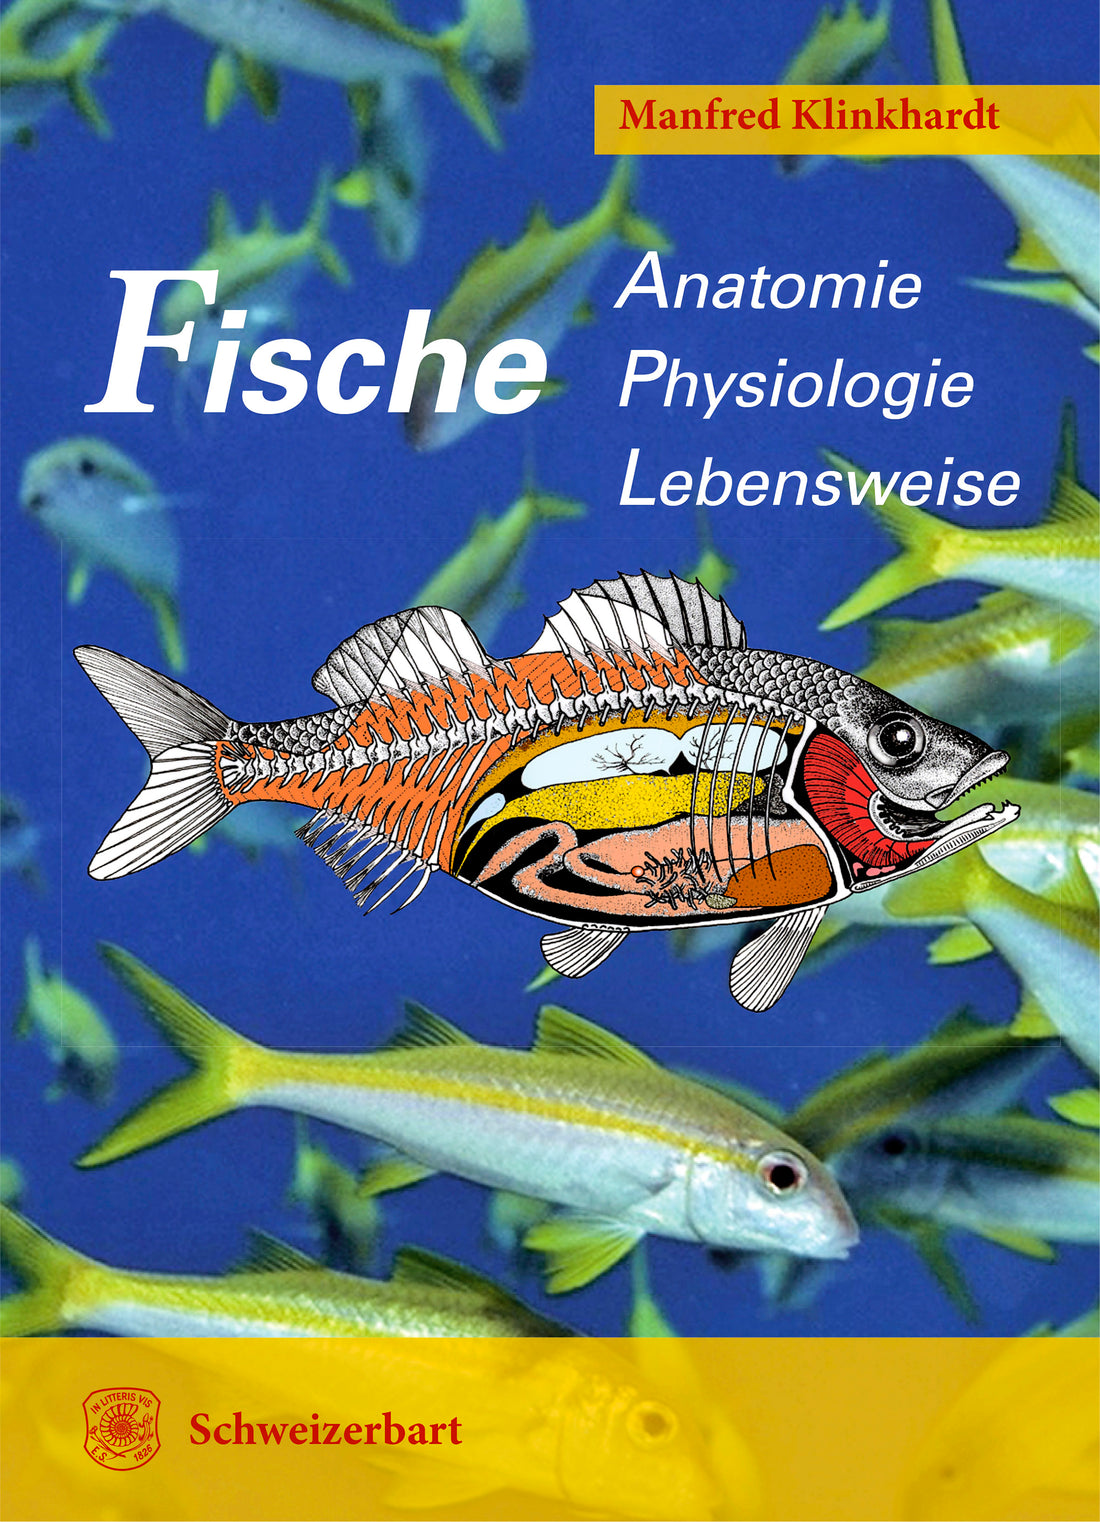 Mehr Wissen über Fische